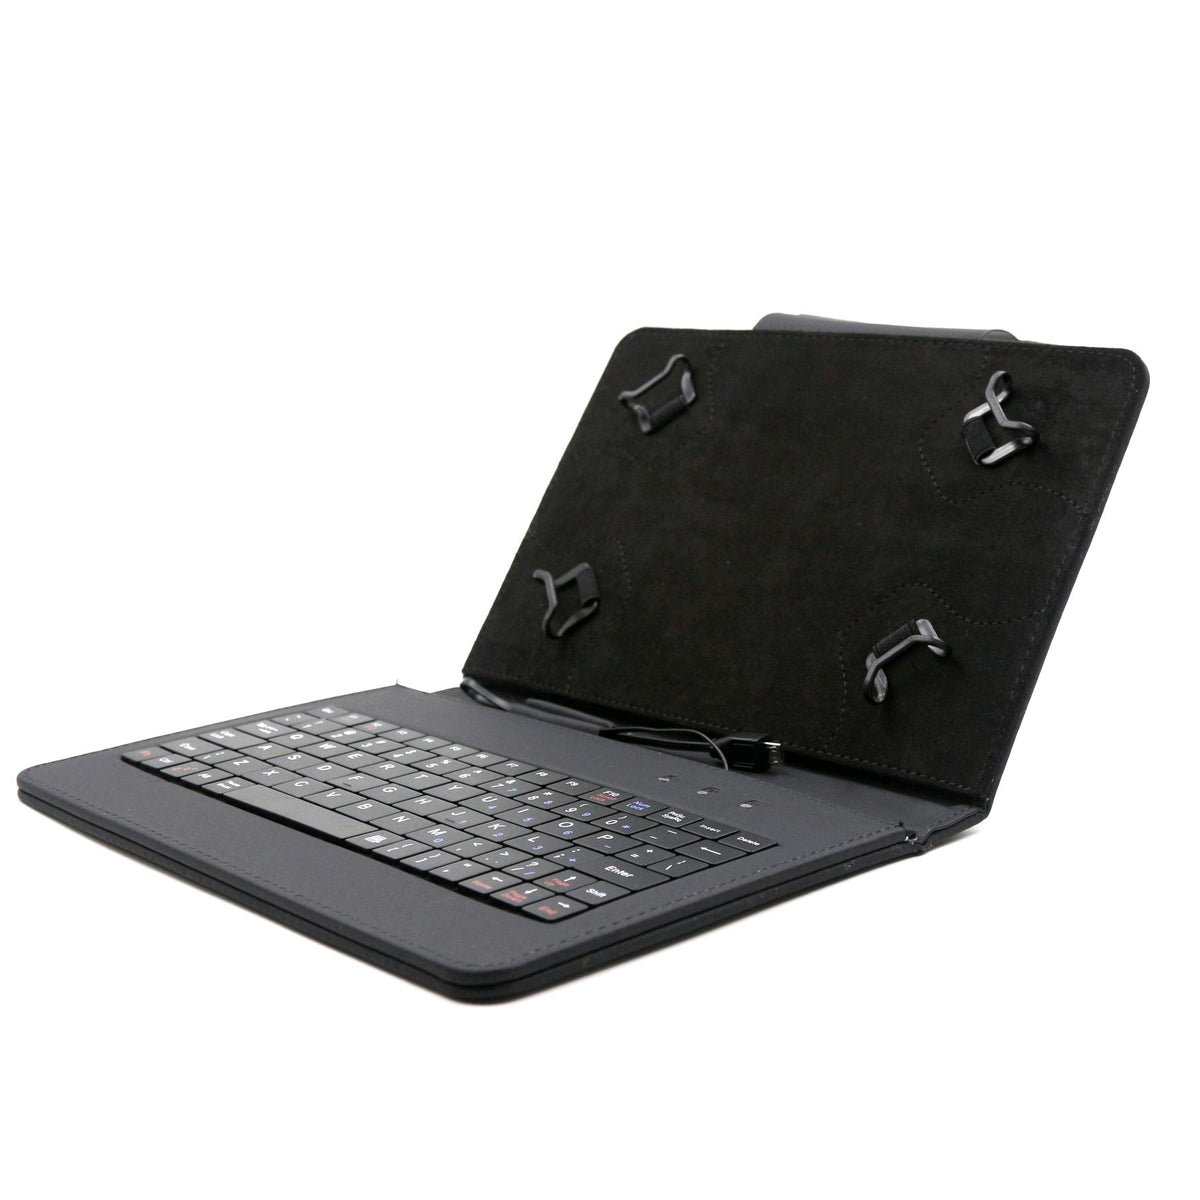 C-TECH PROTECT puzdro s klávesnicou 7 "-7,85" NUTKC-01, čierne